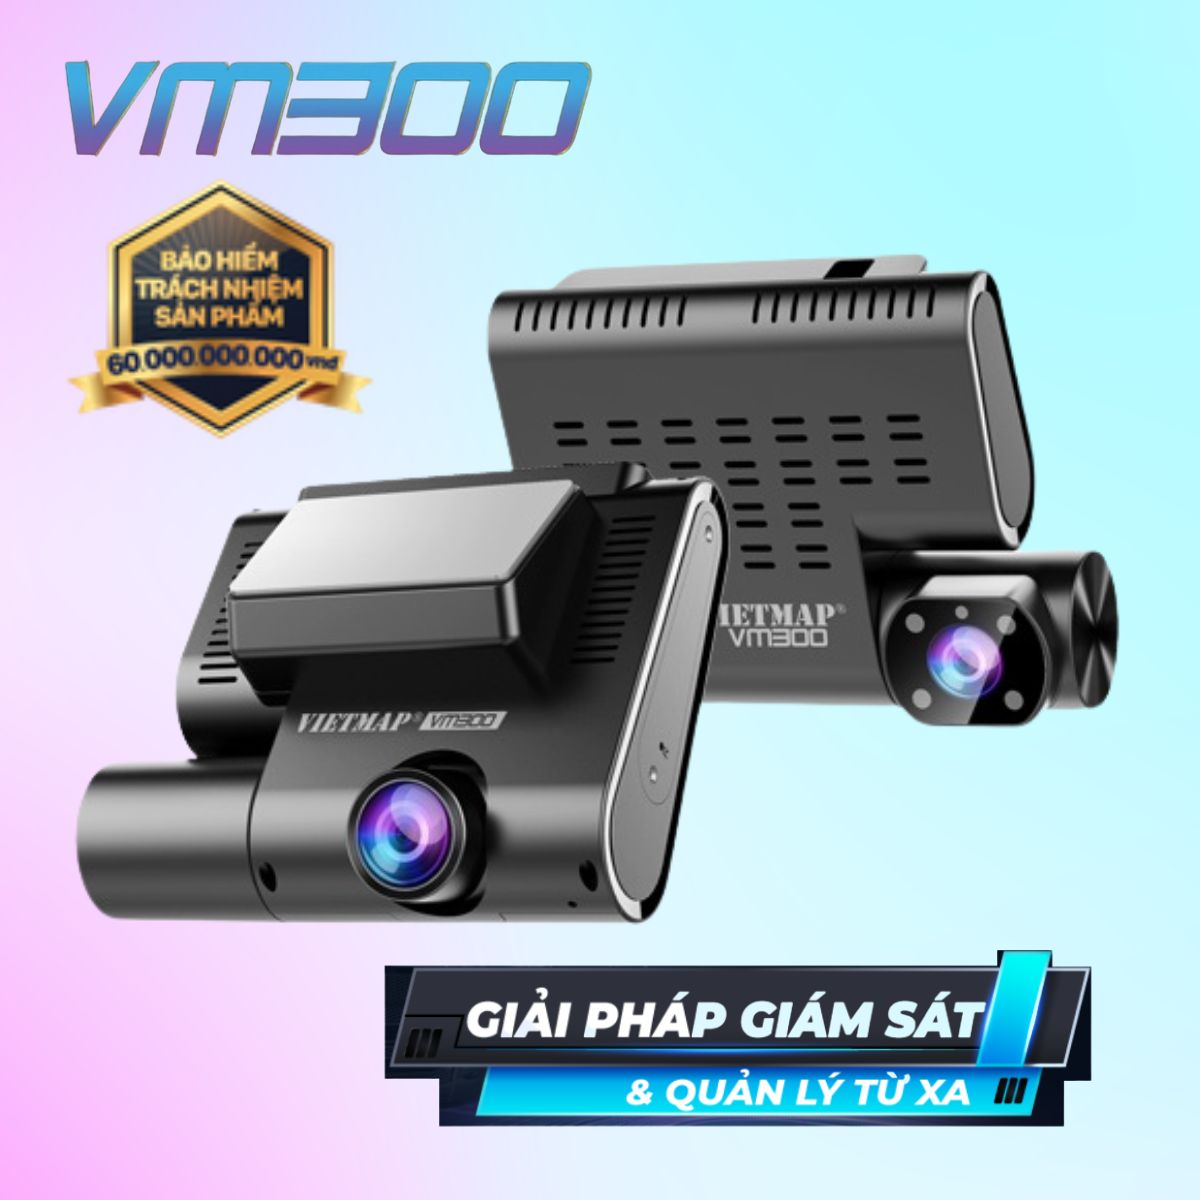 Camera hành trình VIETMAP VM300 quản lý trực tuyến từ xa ( trang bị khe SIM Data 4G) 